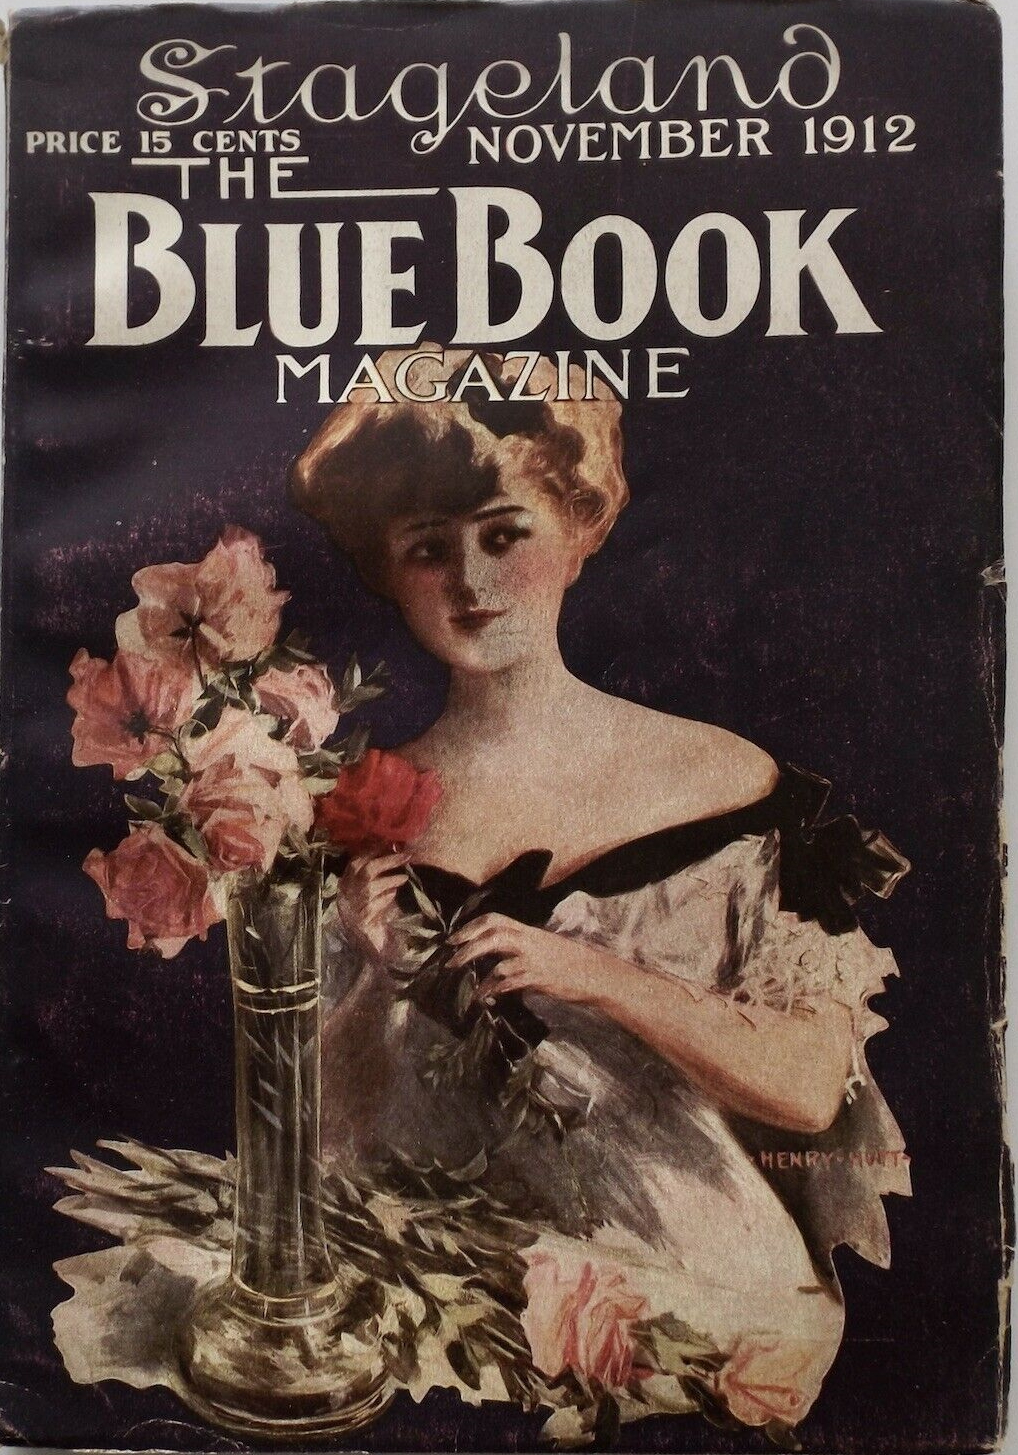 The Blue Book Magazine - Novekber 1912 